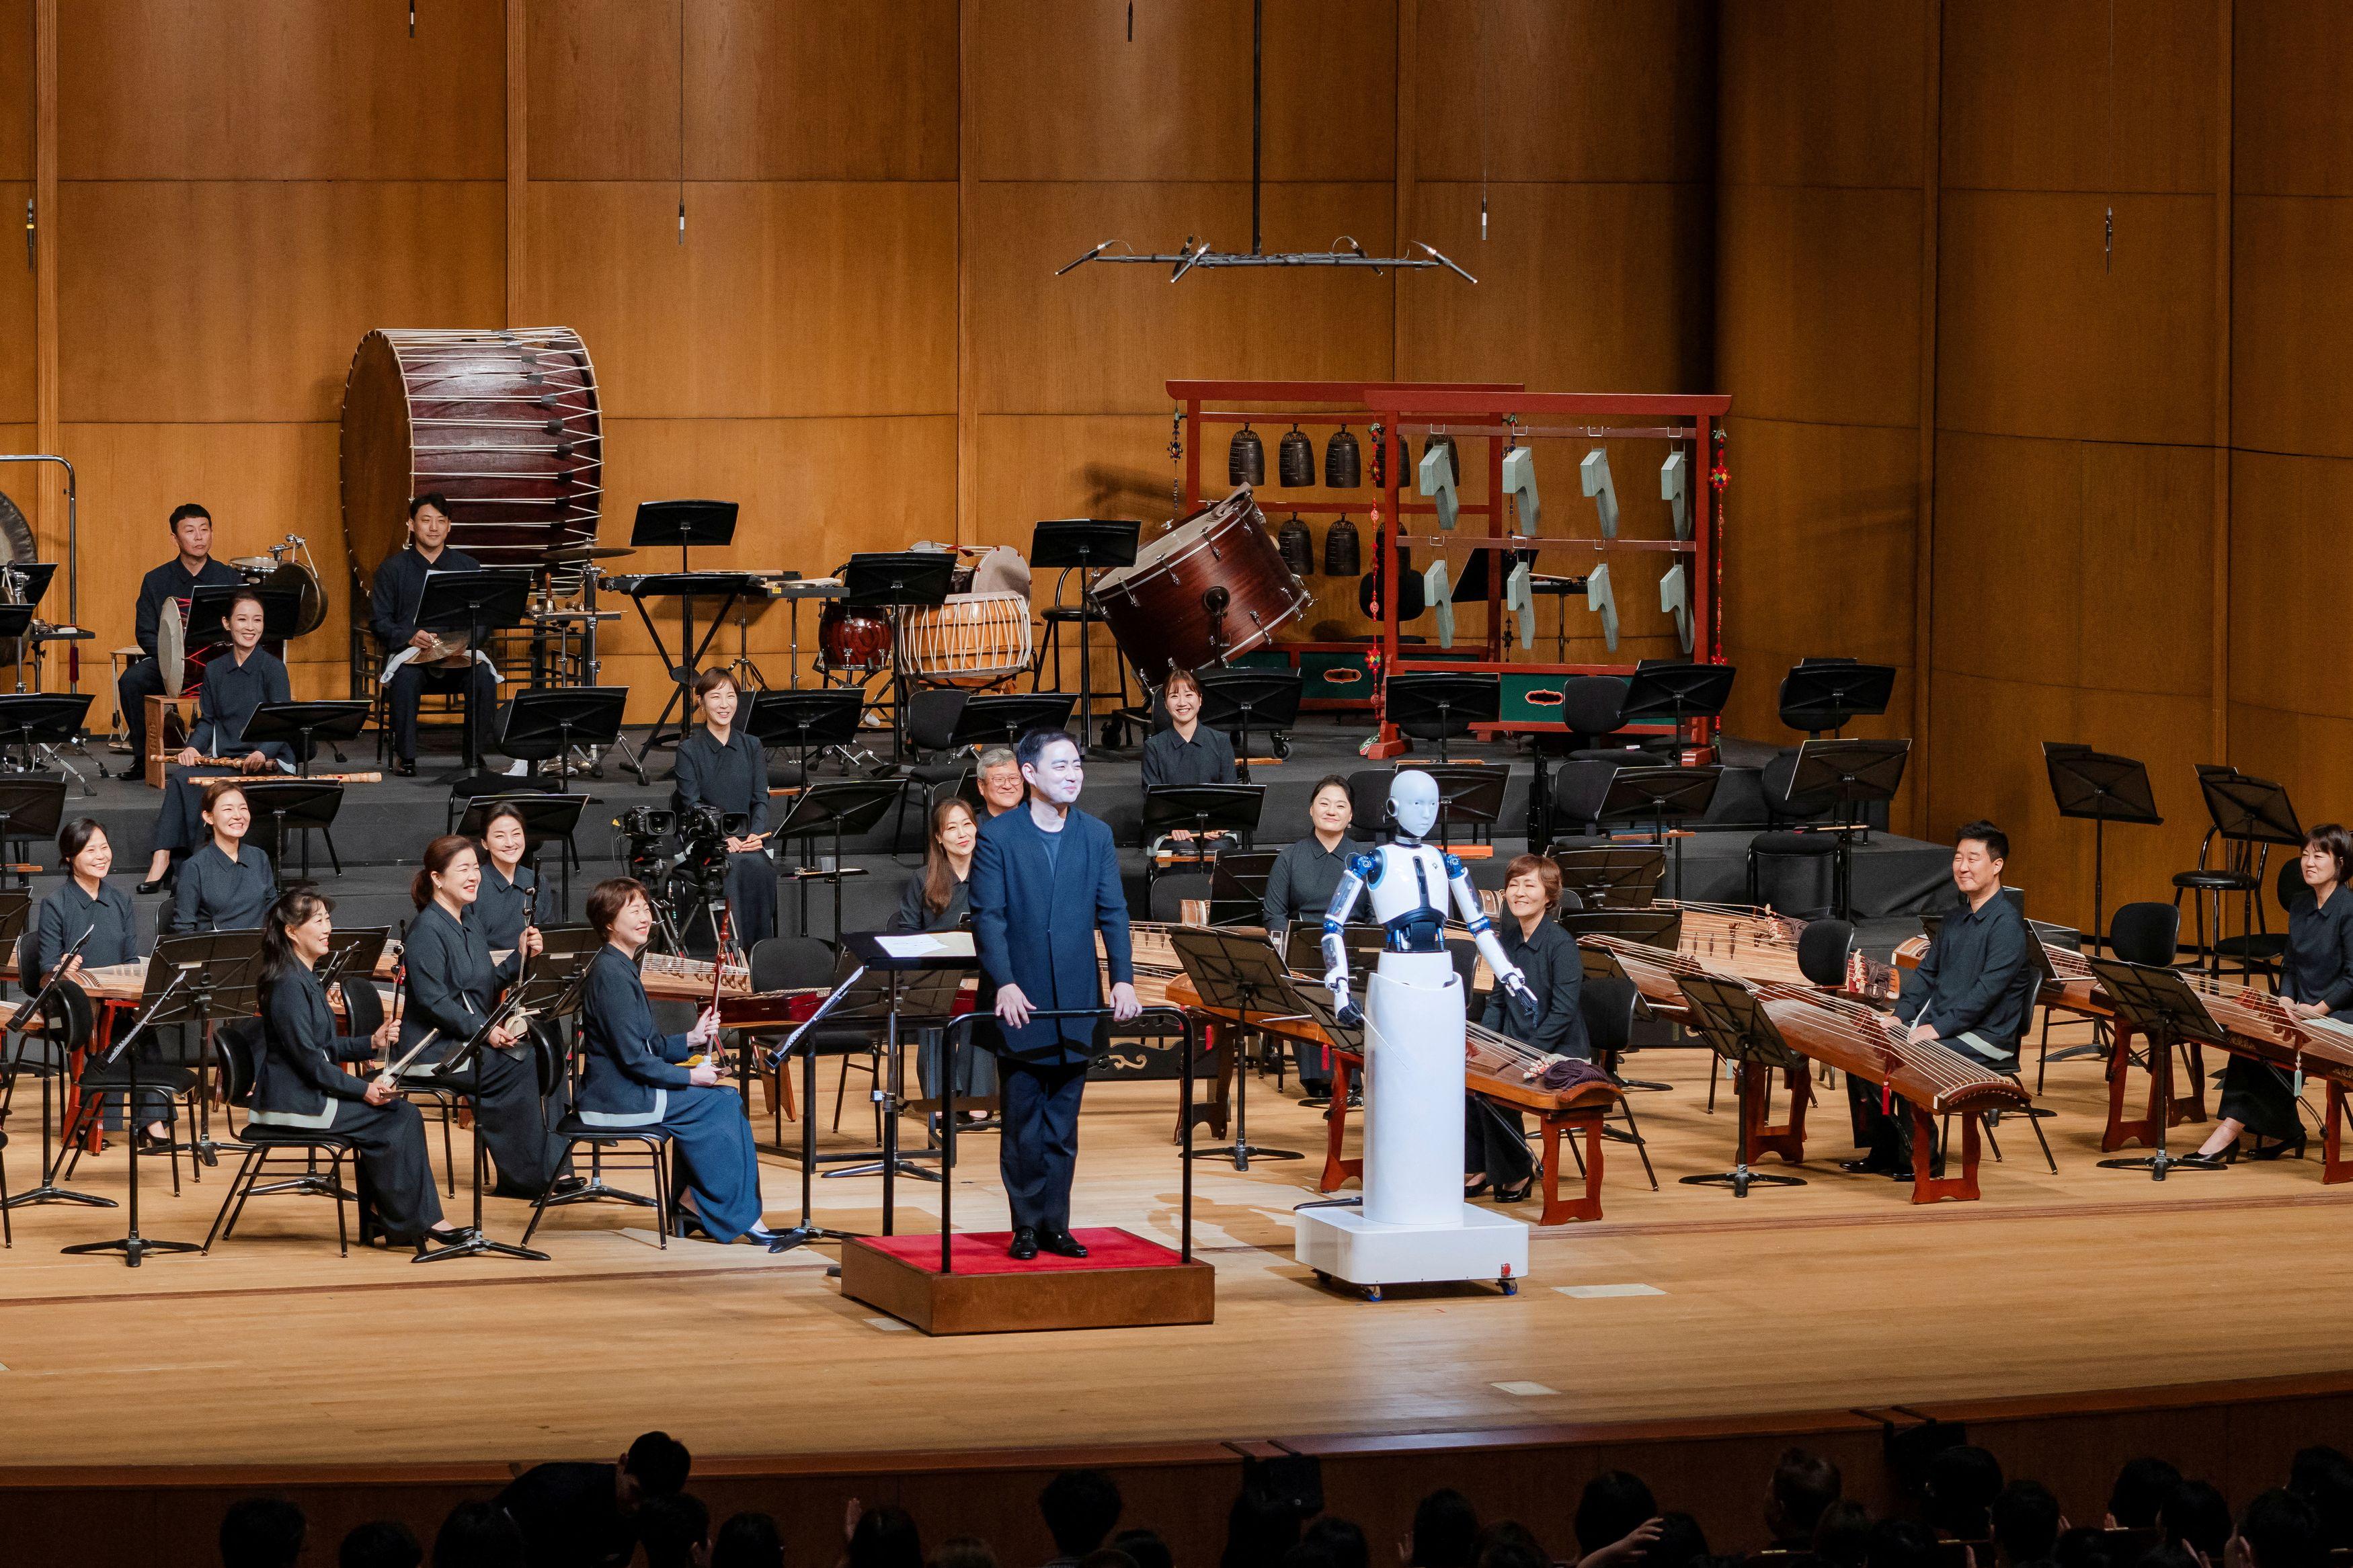 Robô maestro rege orquestra nacional na Coreia do Sul; vídeo